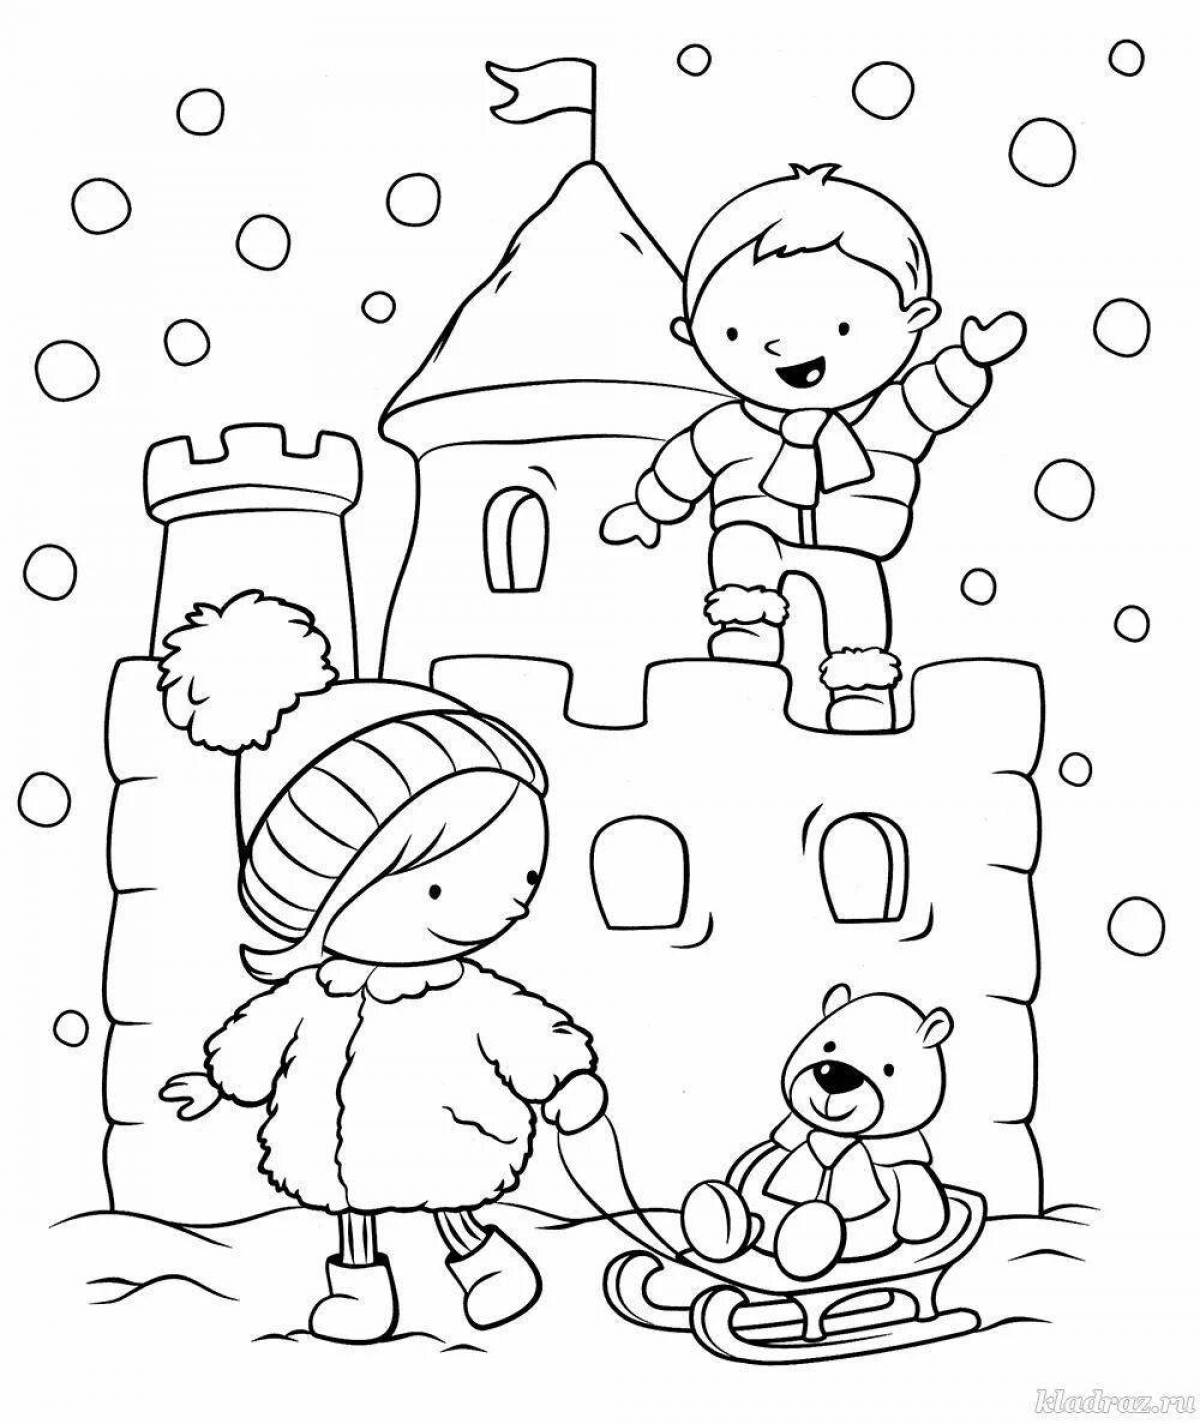 Fancy coloring snow castle for kids